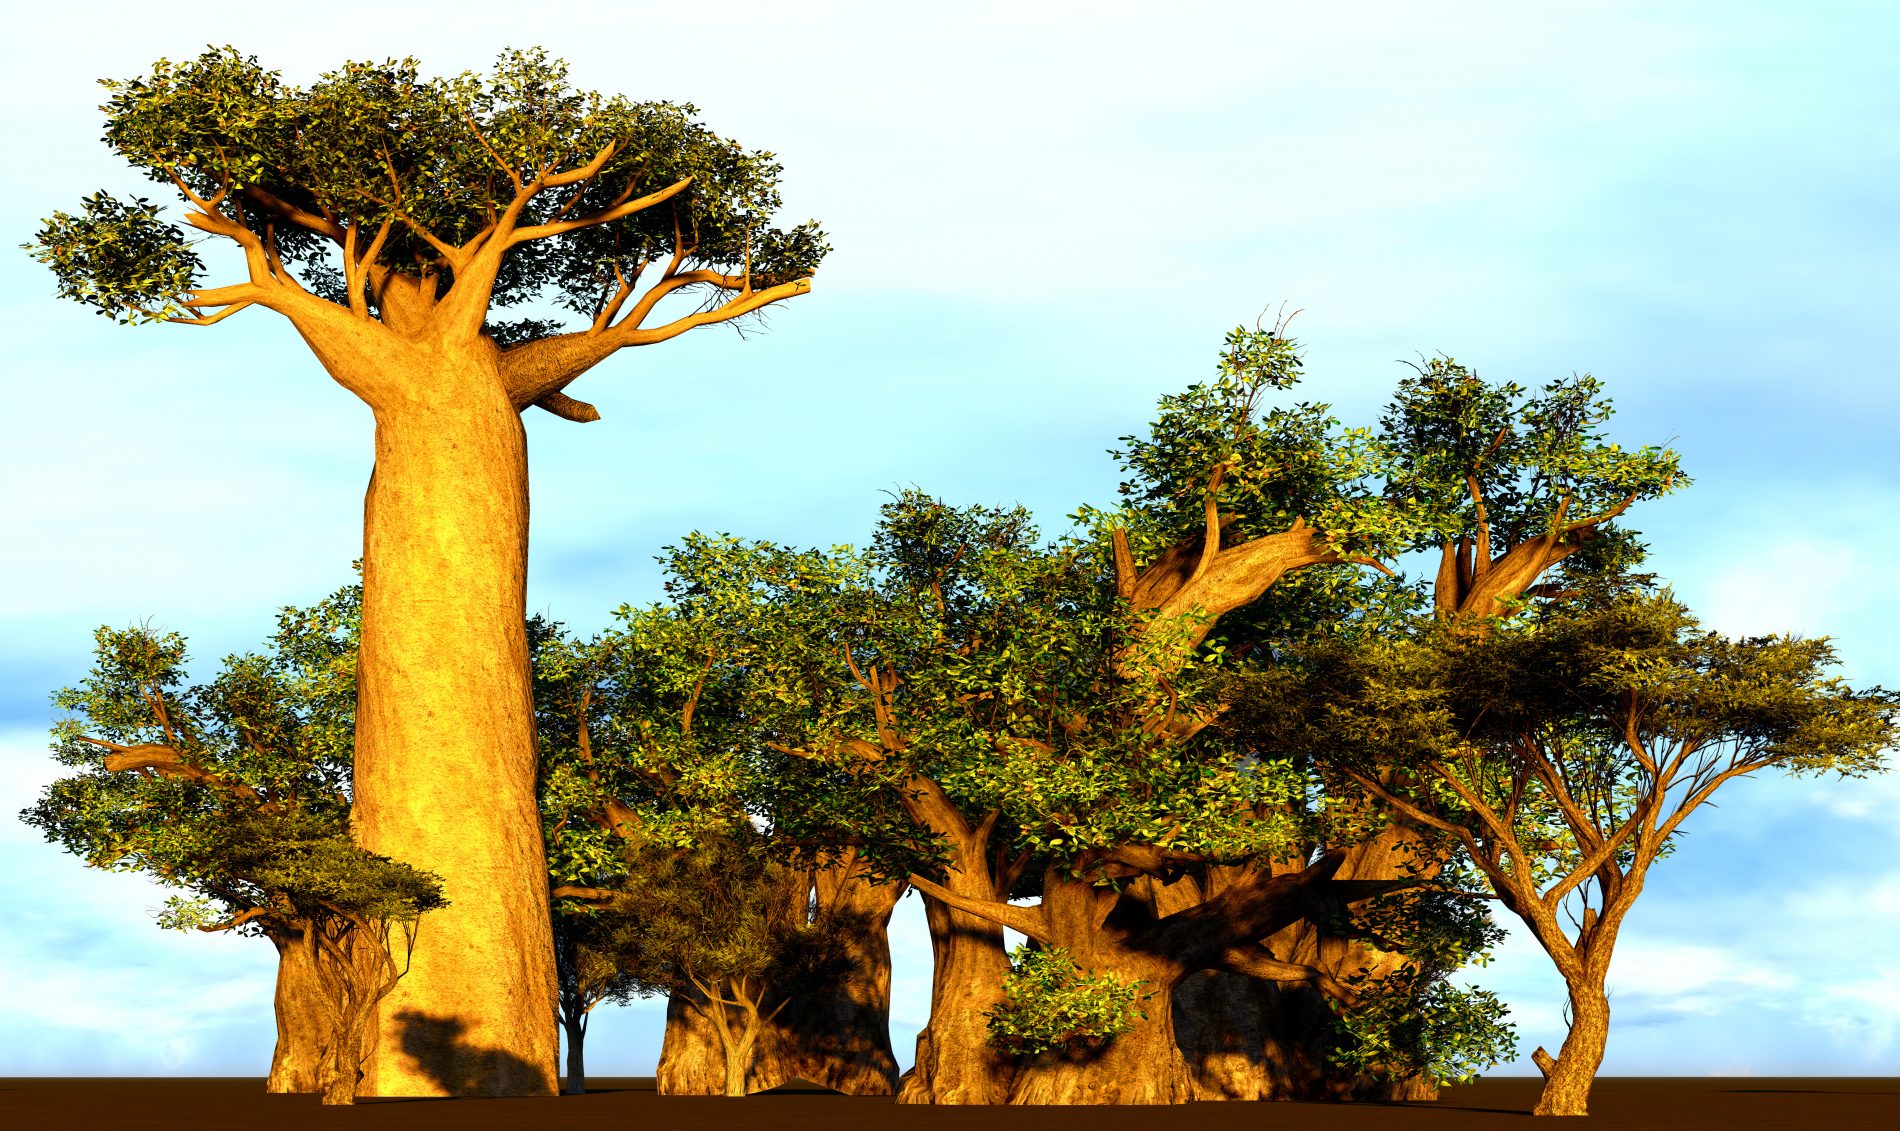 albero e frutto del baobab 